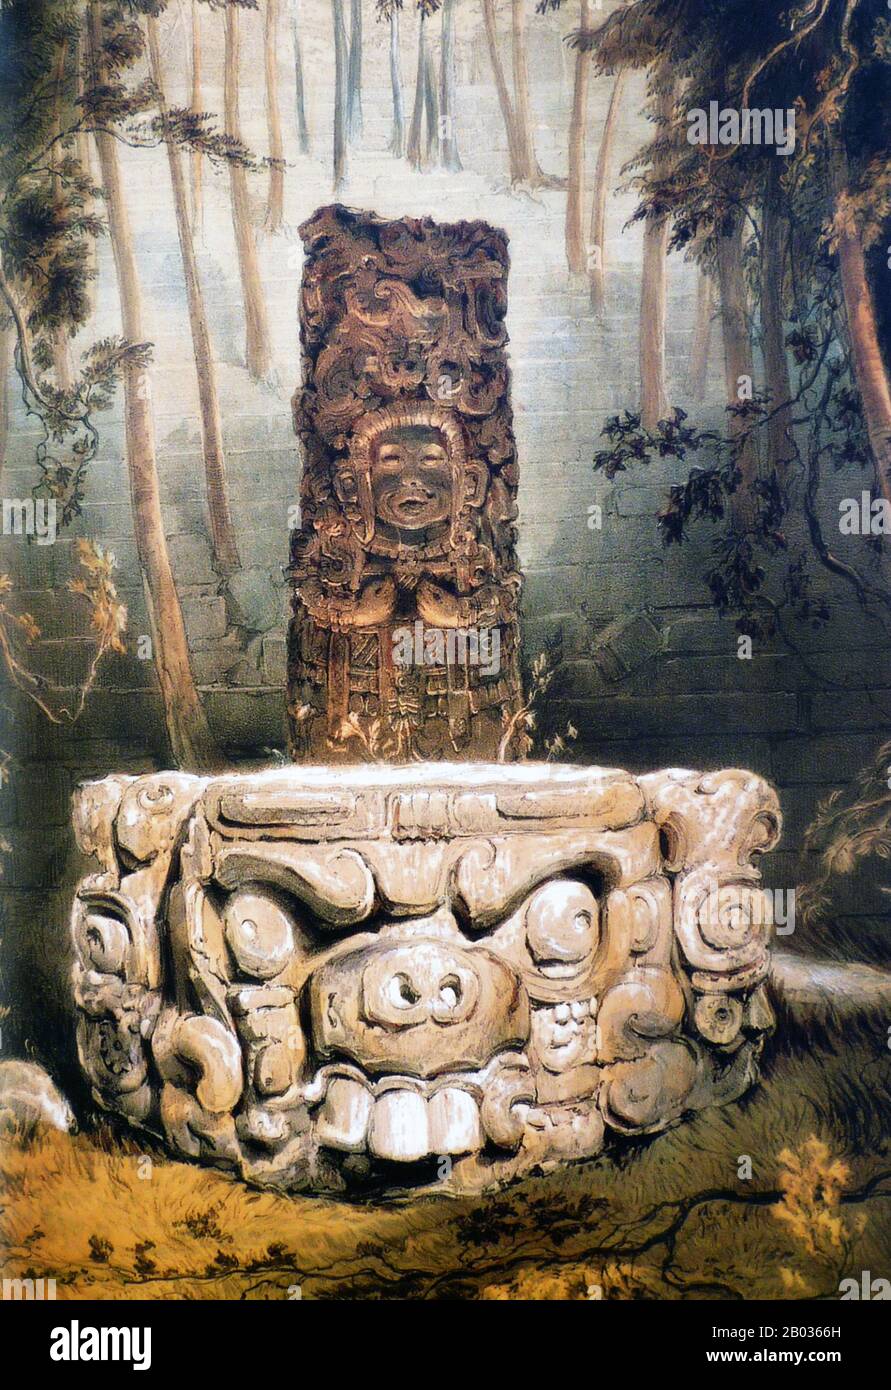 Copán est un site archéologique de la civilisation maya situé dans le département de Copan de l'ouest du Honduras, non loin de la frontière avec le Guatemala. C'était la capitale d'un royaume de la Grande période Classique du 5ème au 9ème siècles ce. La ville était située à l'extrême sud-est de la région culturelle méso-américaine, à la frontière avec la région culturelle isthmo-colombienne, et était presque entourée par des peuples non maya. Copan a été occupé pendant plus de deux mille ans, de la période préclassique précoce à la Postclassic. La ville a développé un style sculptural distinctif dans le Banque D'Images